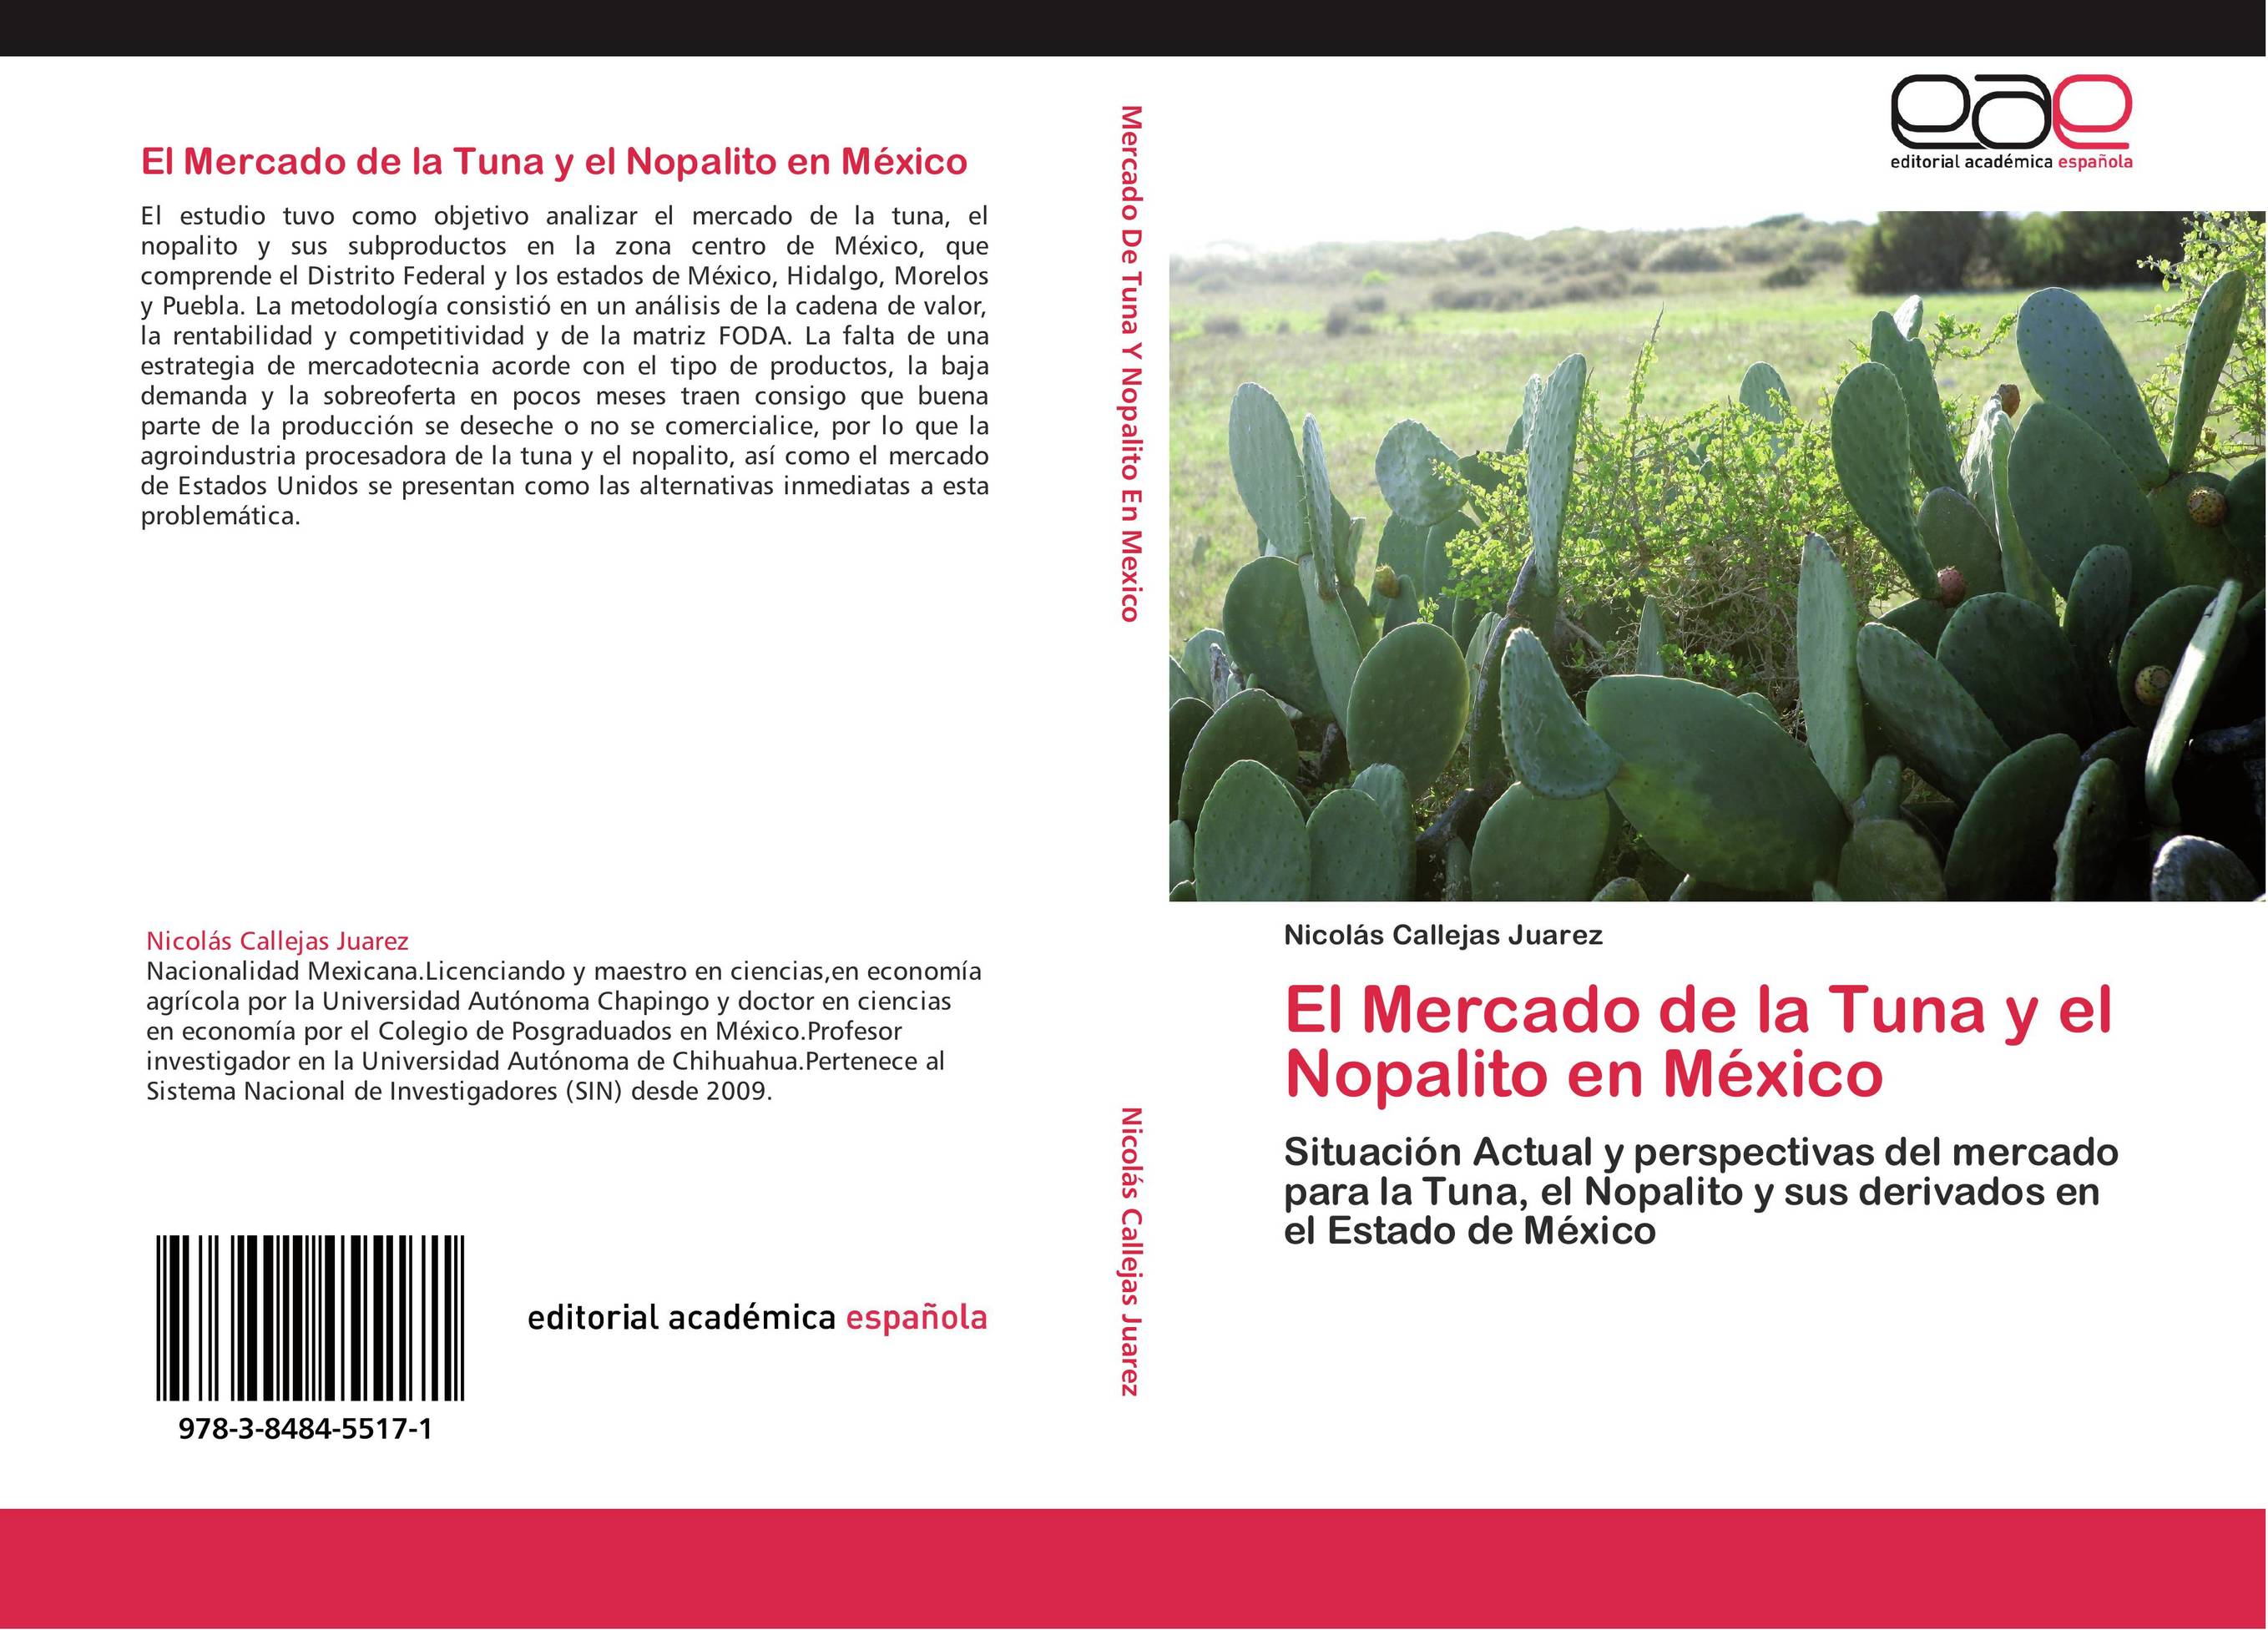 El Mercado de la Tuna y el Nopalito en México